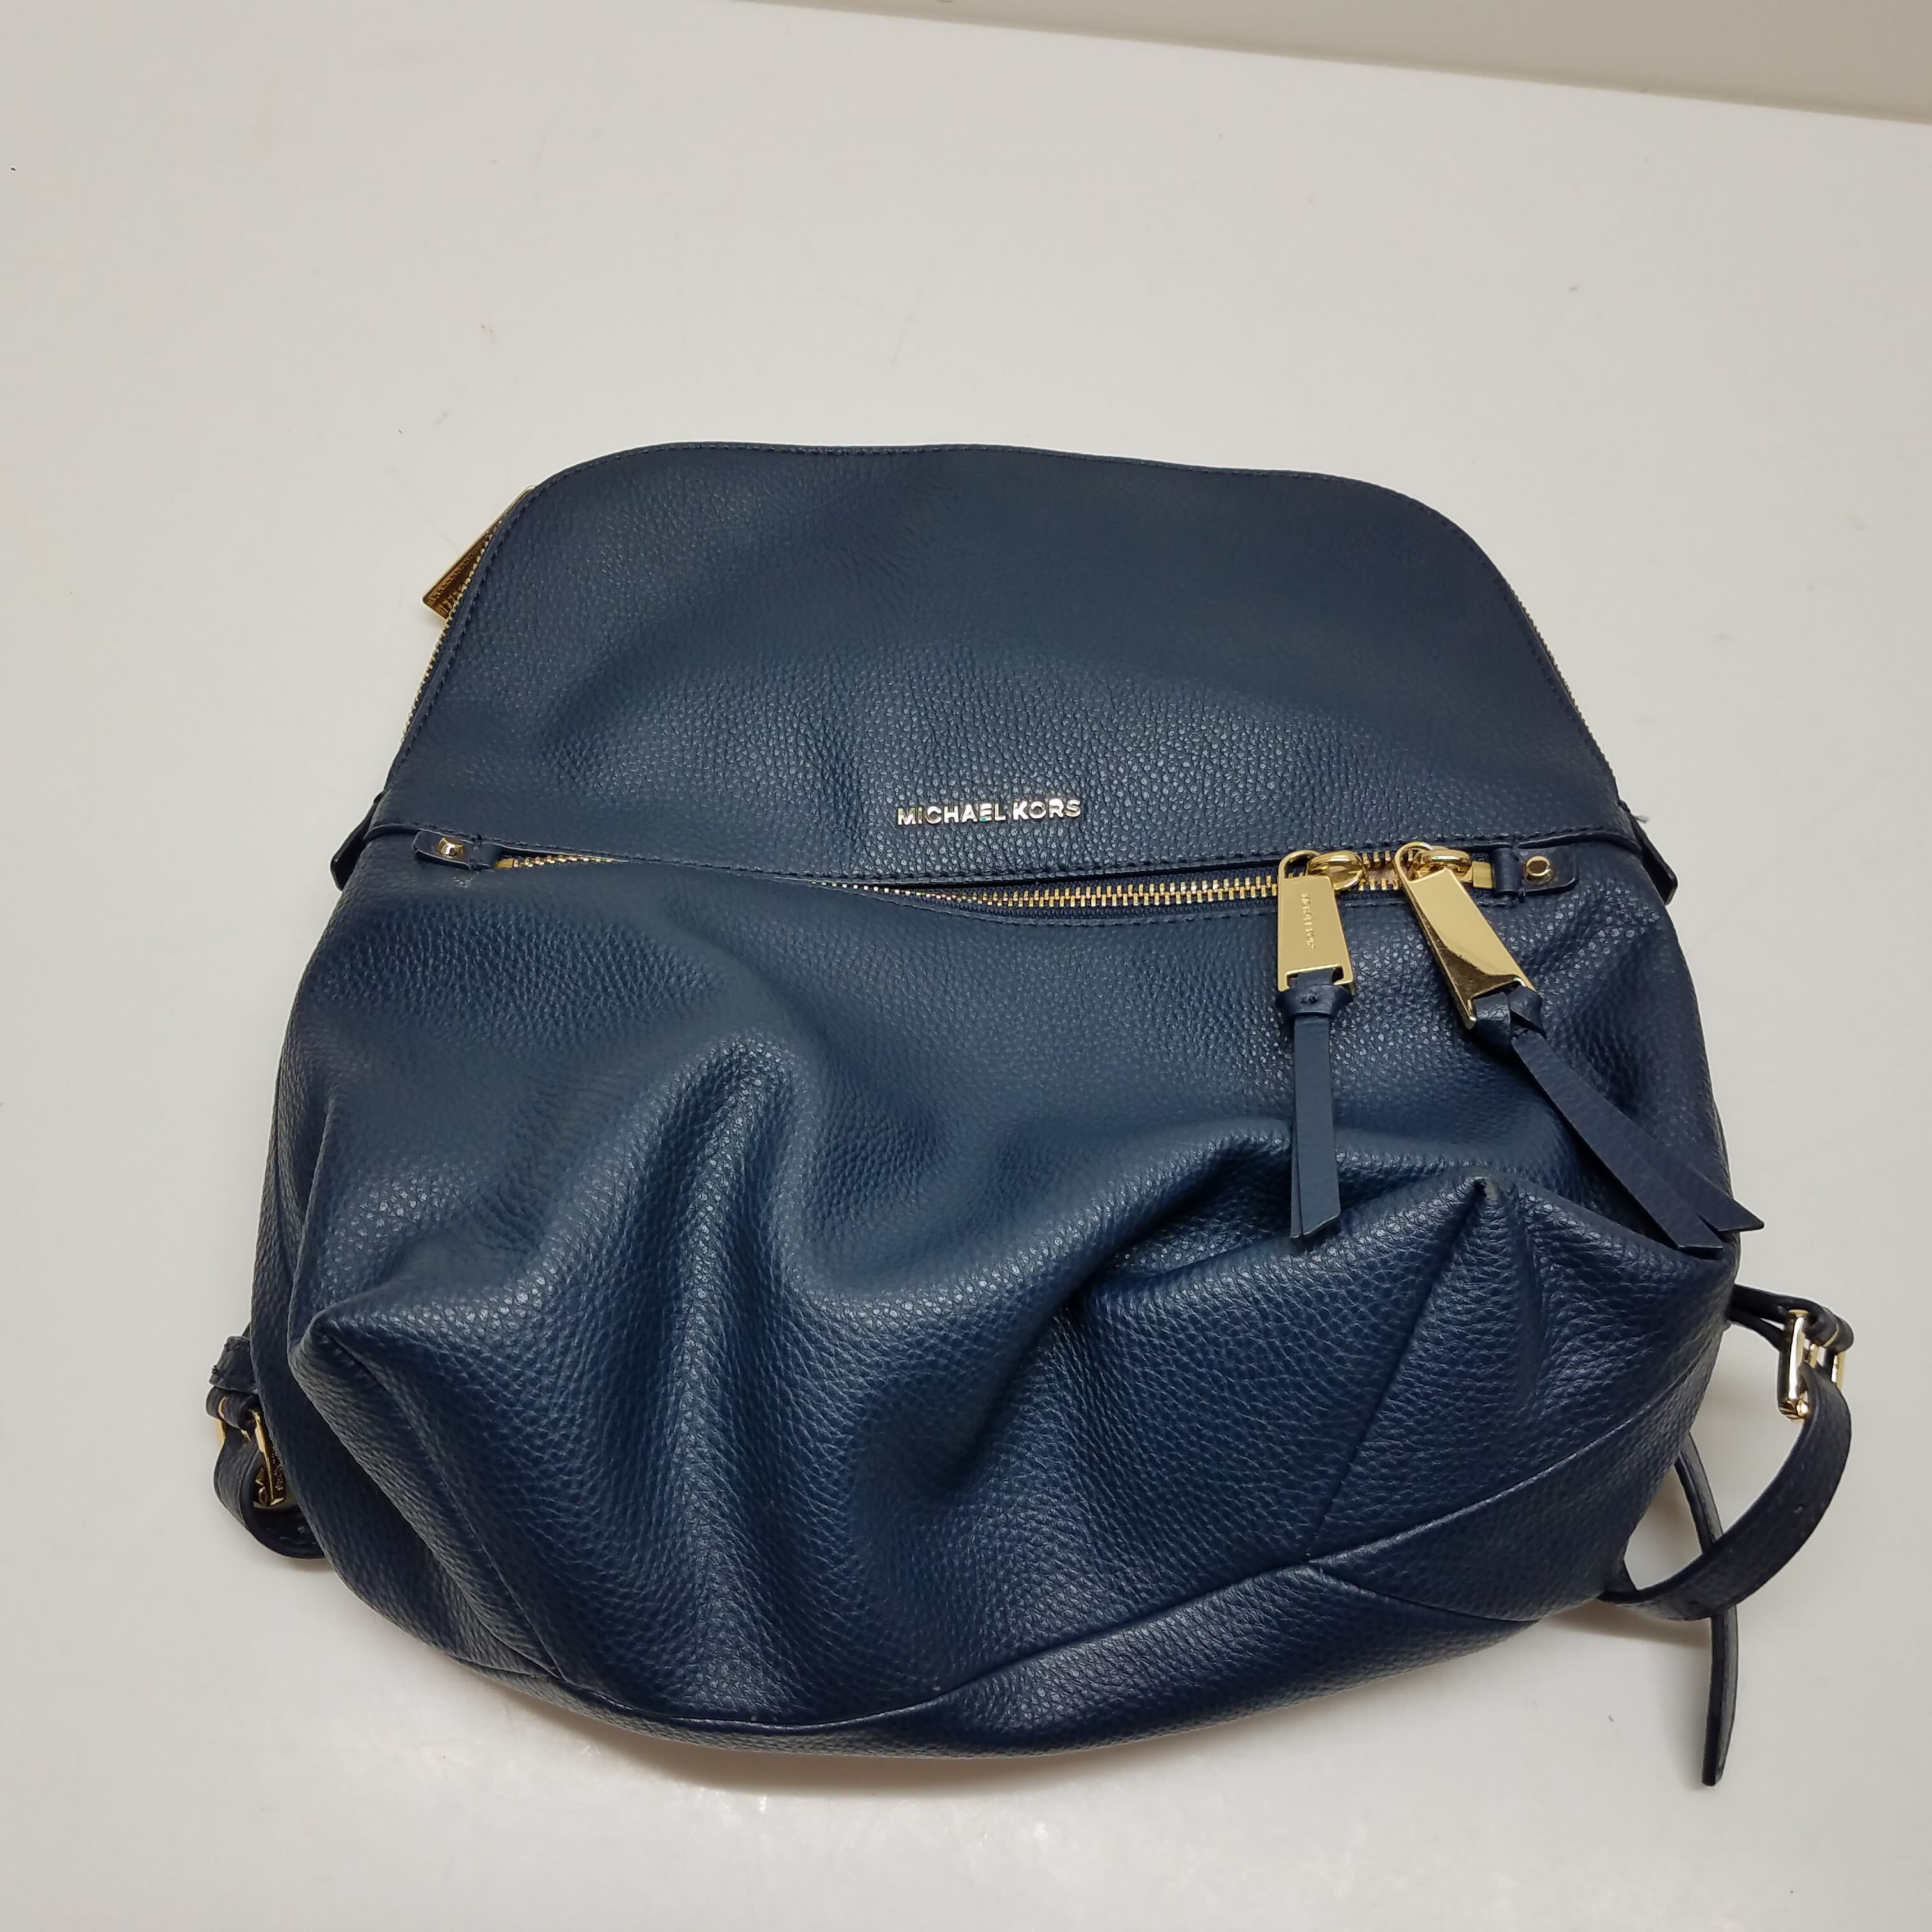 Michael Kors Valerie Medium Leather Backpack Black or Merlot $358 NWT  Packed | eBay